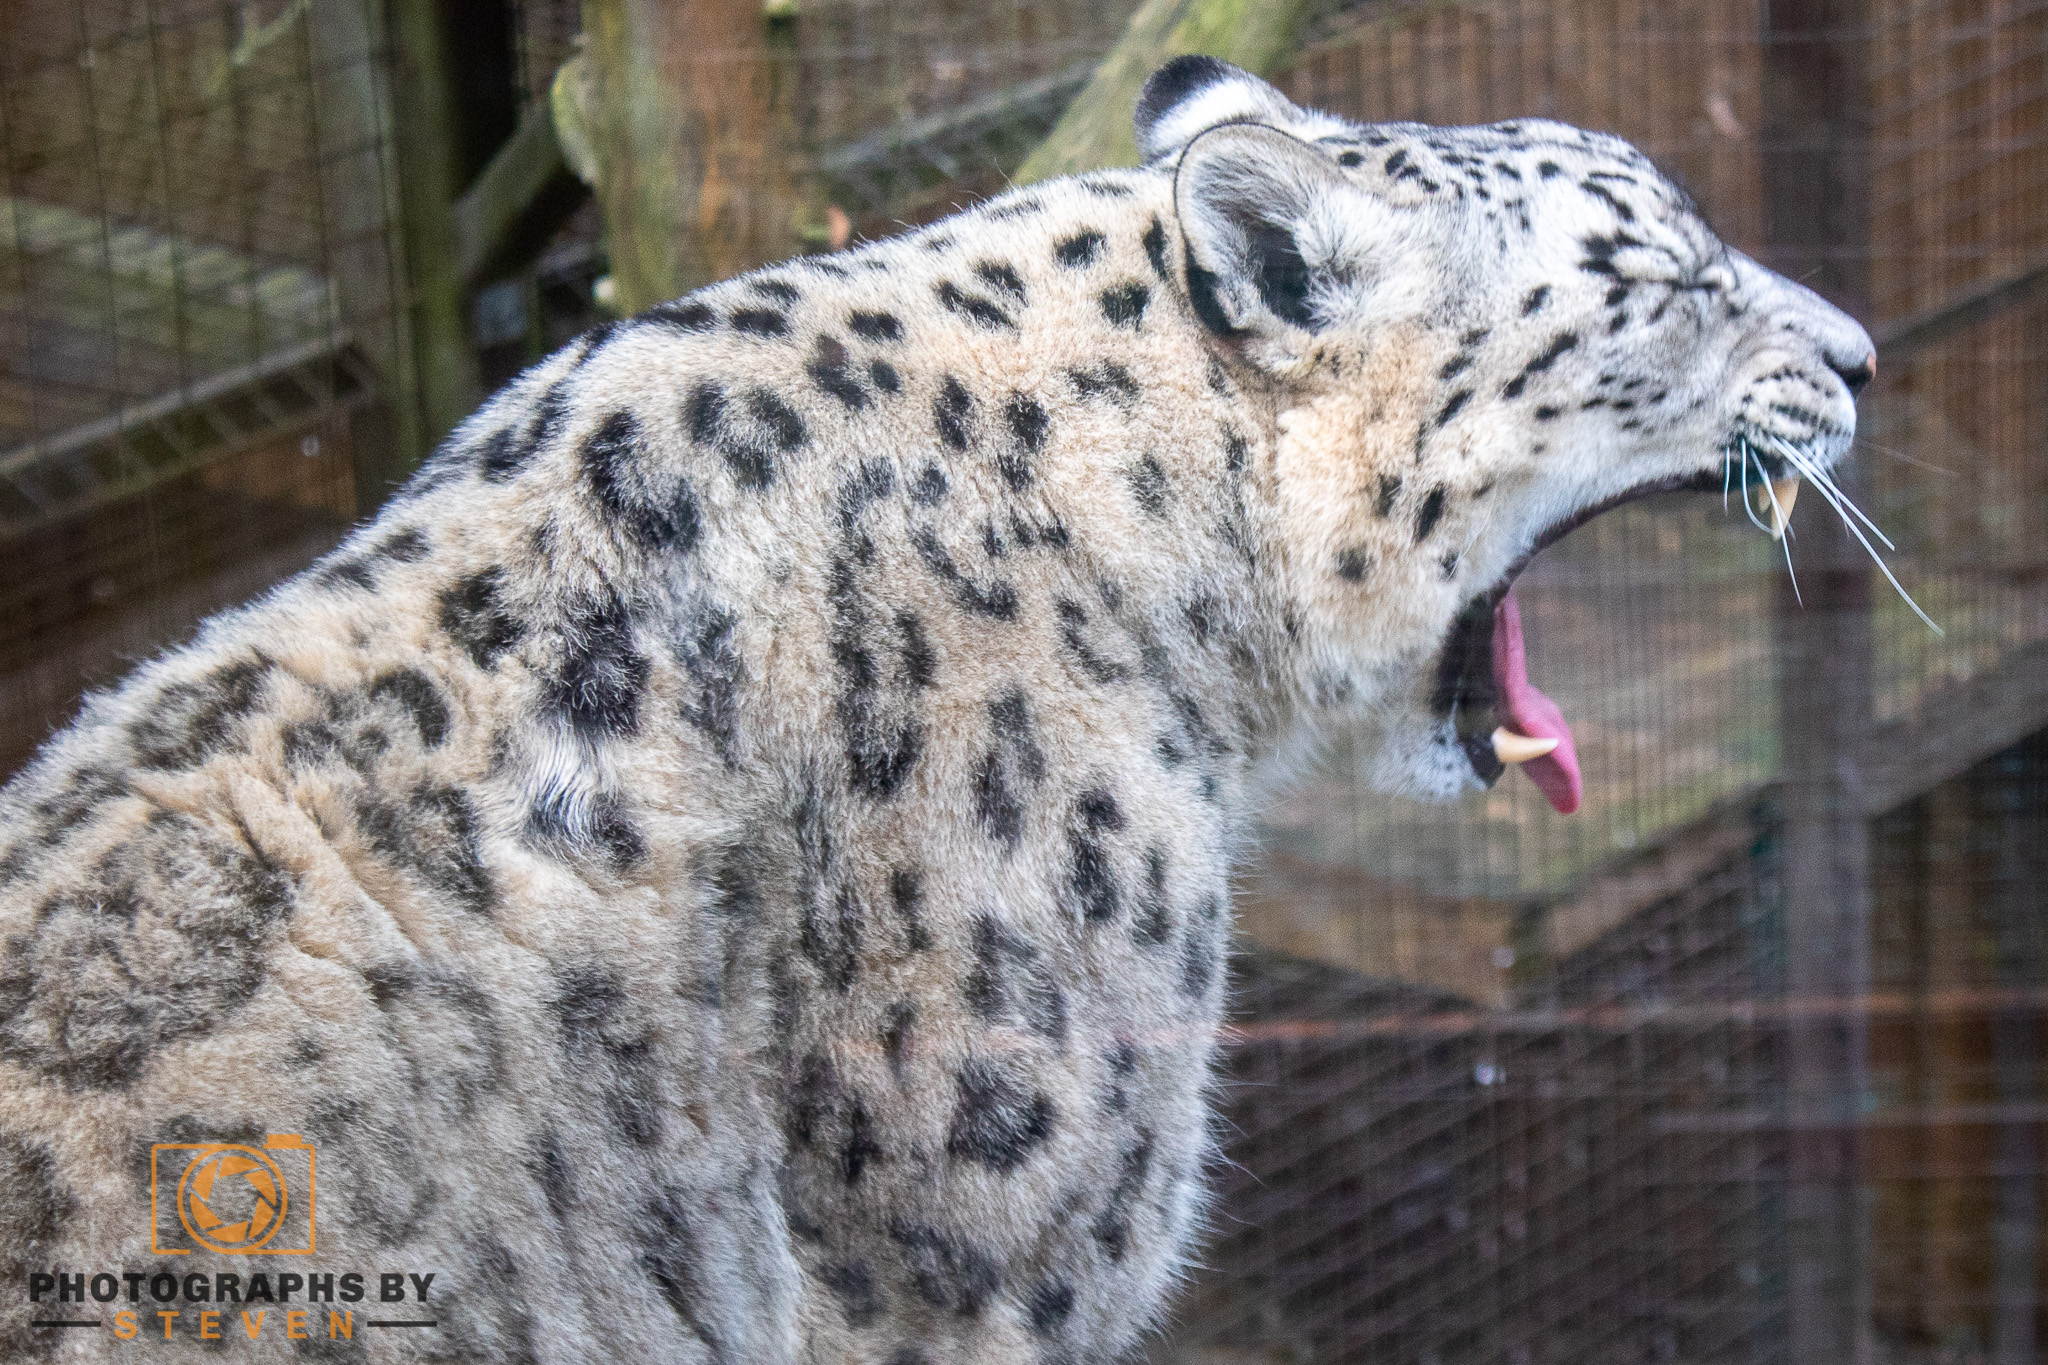 Snow leopard | Photographs by Steven